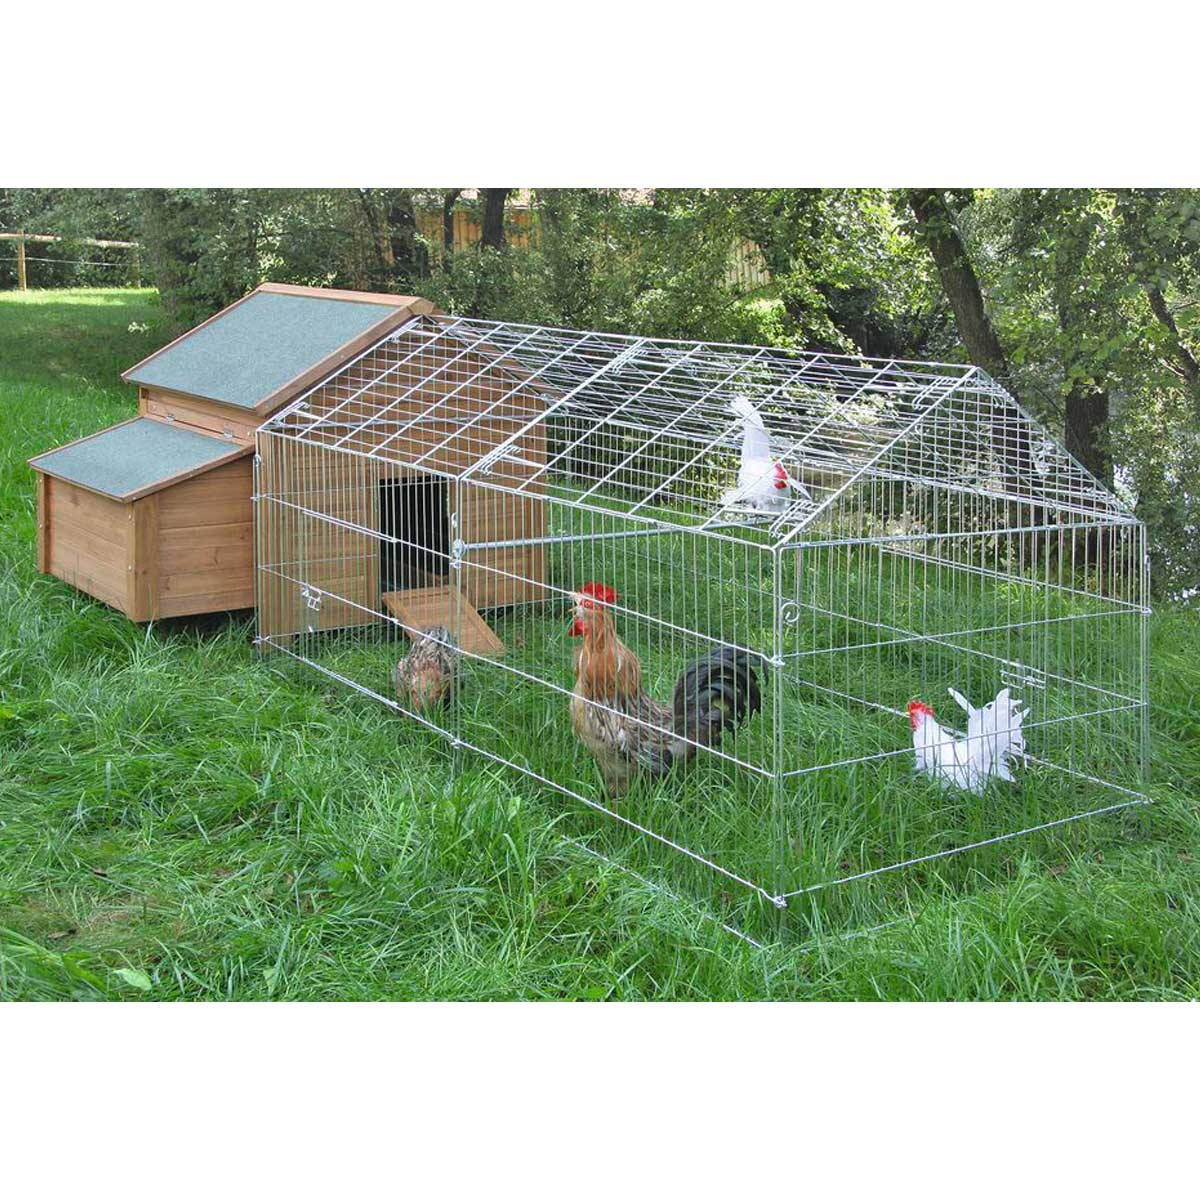 Conigliera Pollaio recinto gabbia in legno per polli galline